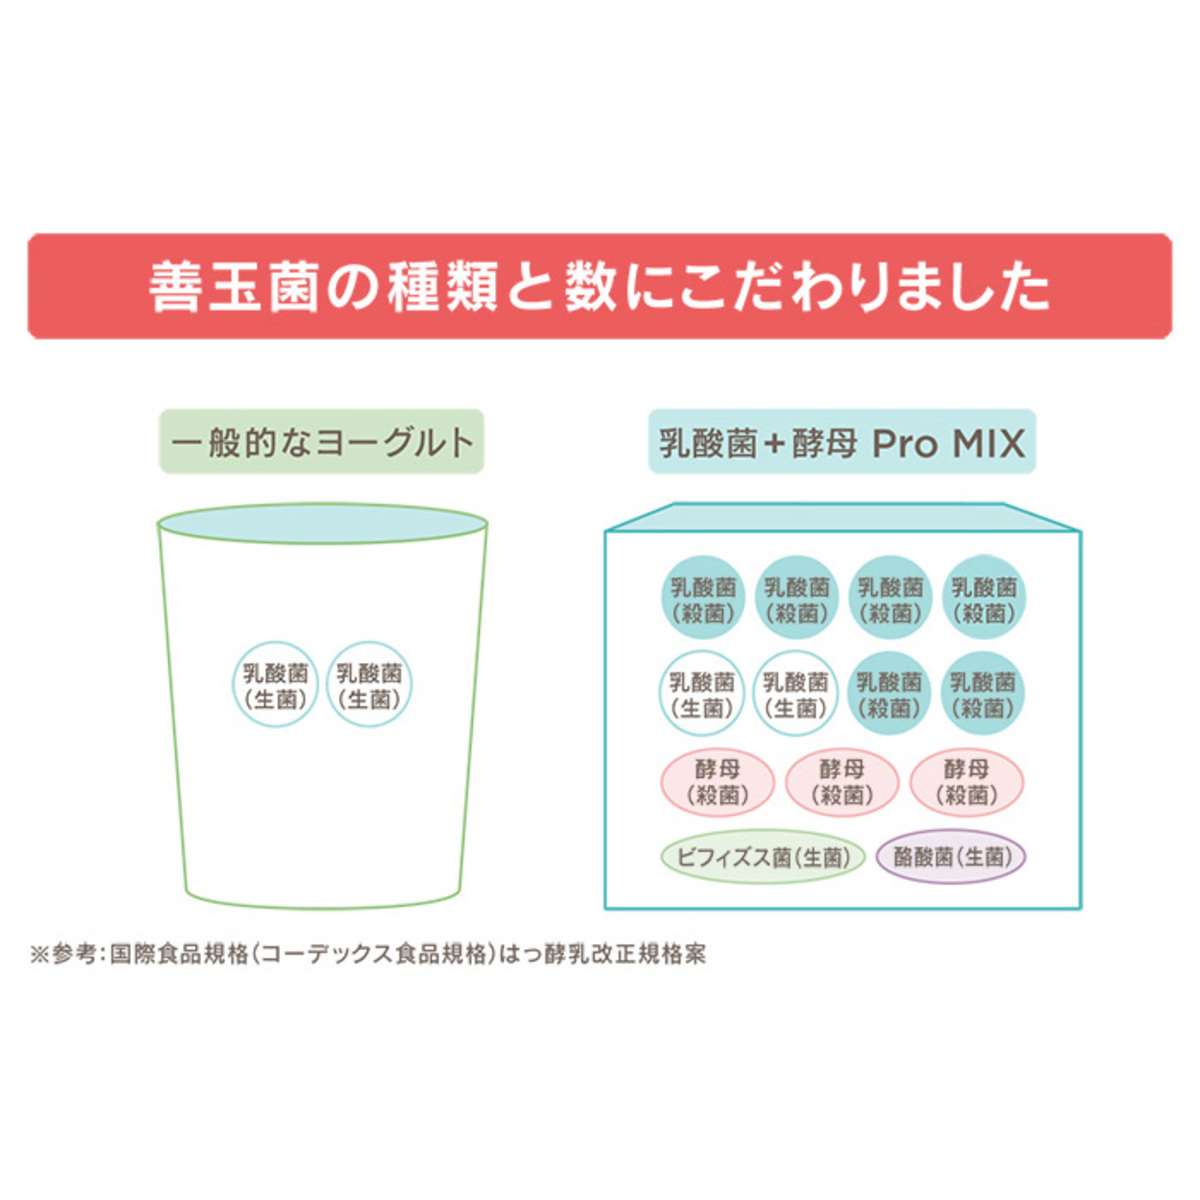 乳酸菌+酵母 Pro MIX 3箱セット - QVC.jp